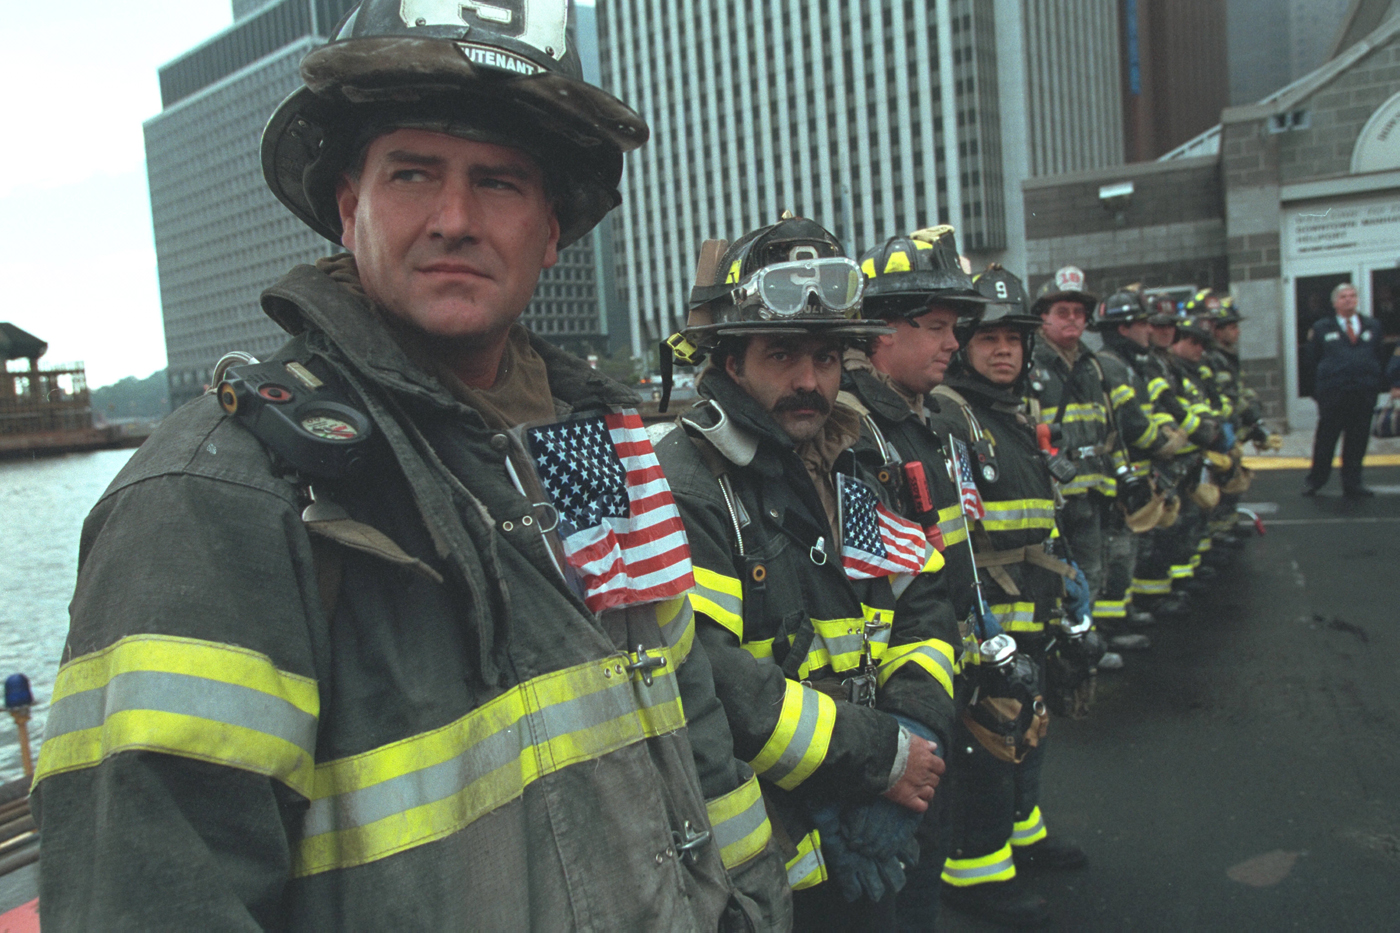 Izmoreni njujorški vatrogasci dočekuju predsjednika Busha u lučkoj upravi New Yorka.